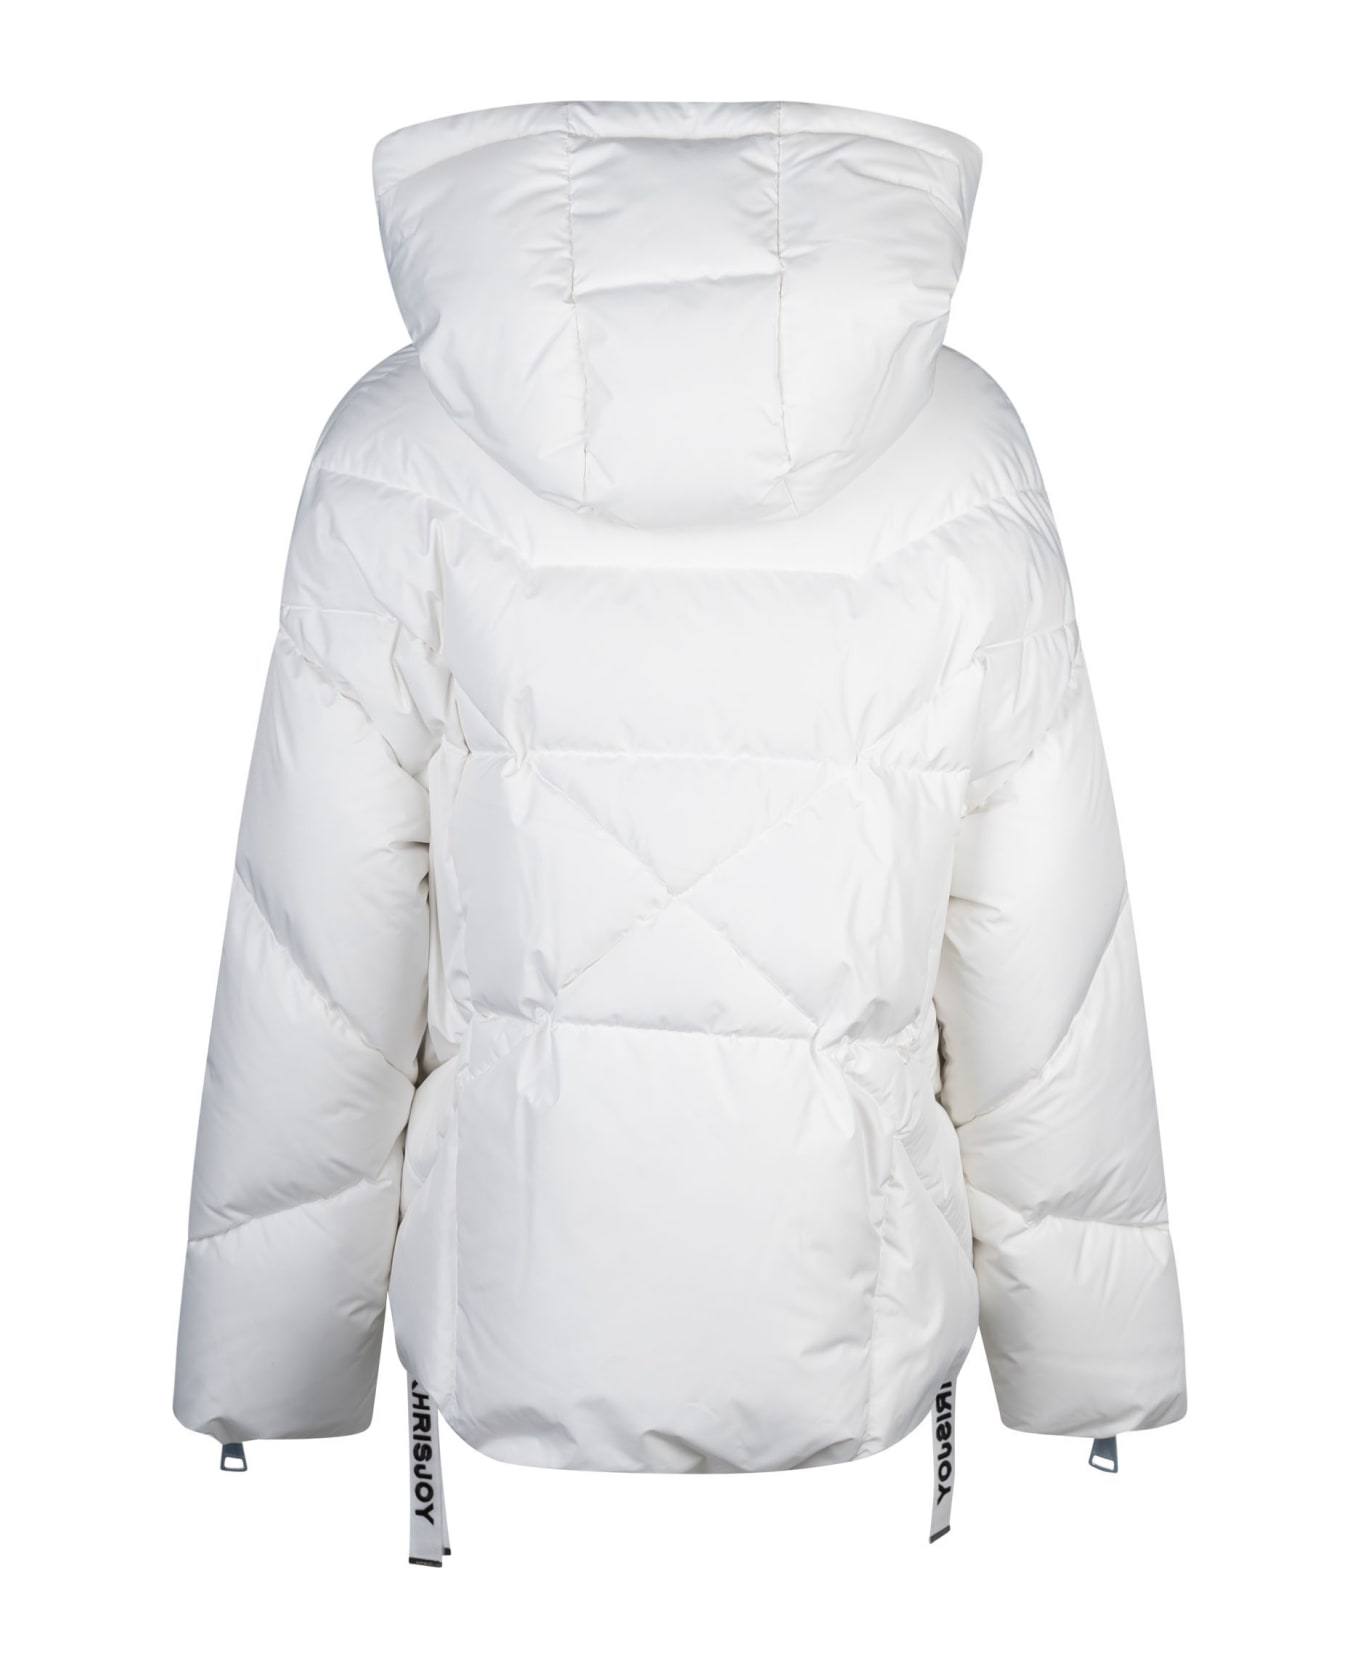 Khrisjoy Iconic Puffer Jacket - White